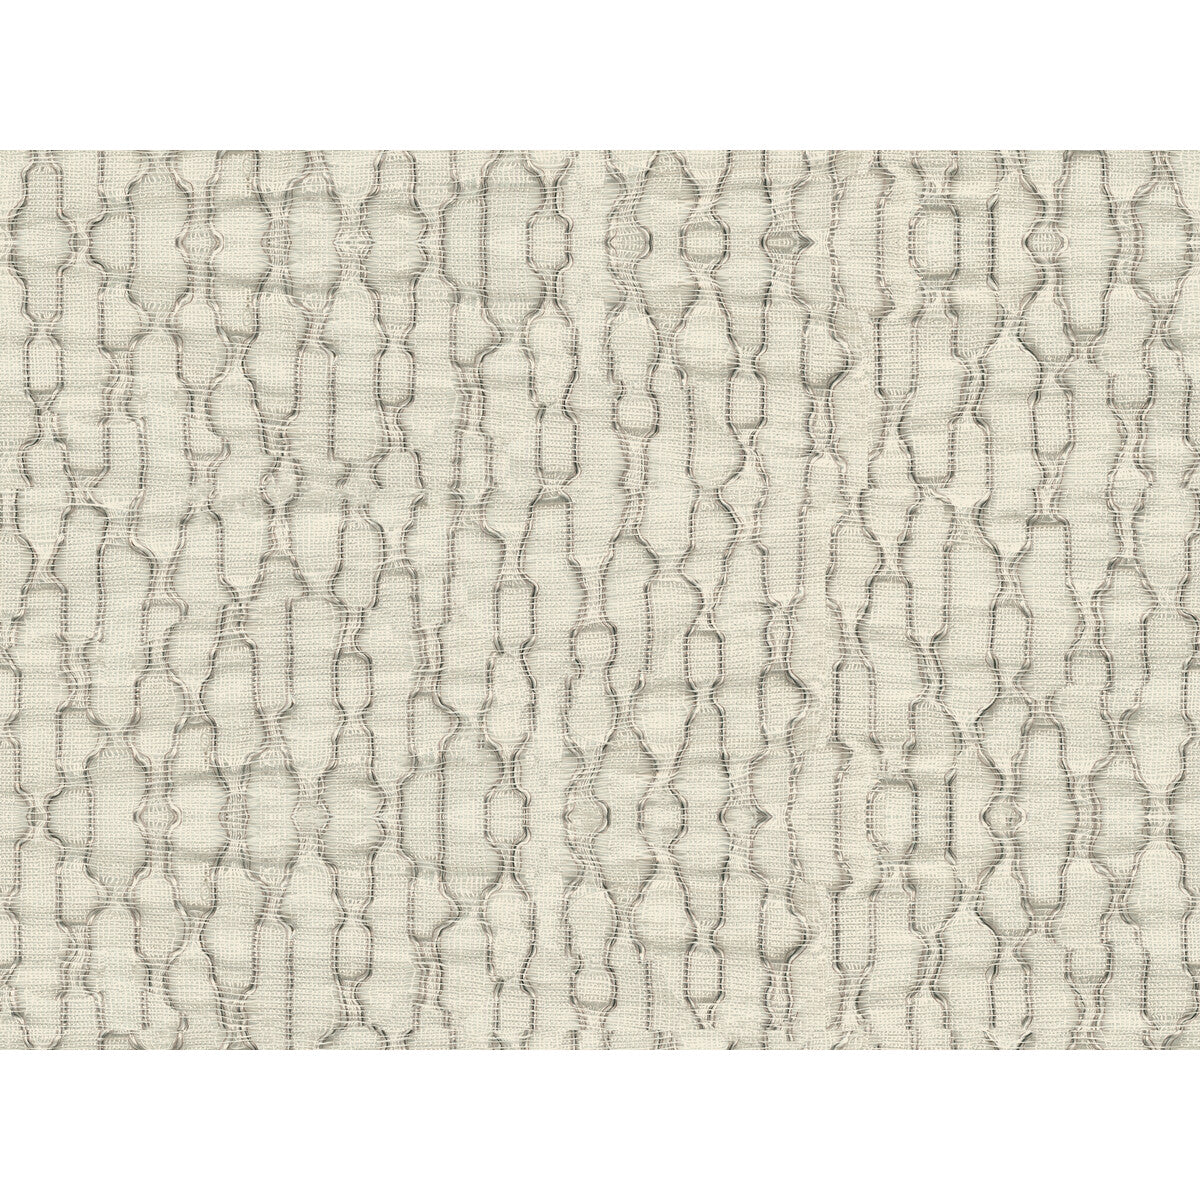 Kravet Basics fabric in 4492-16 color - pattern 4492.16.0 - by Kravet Basics